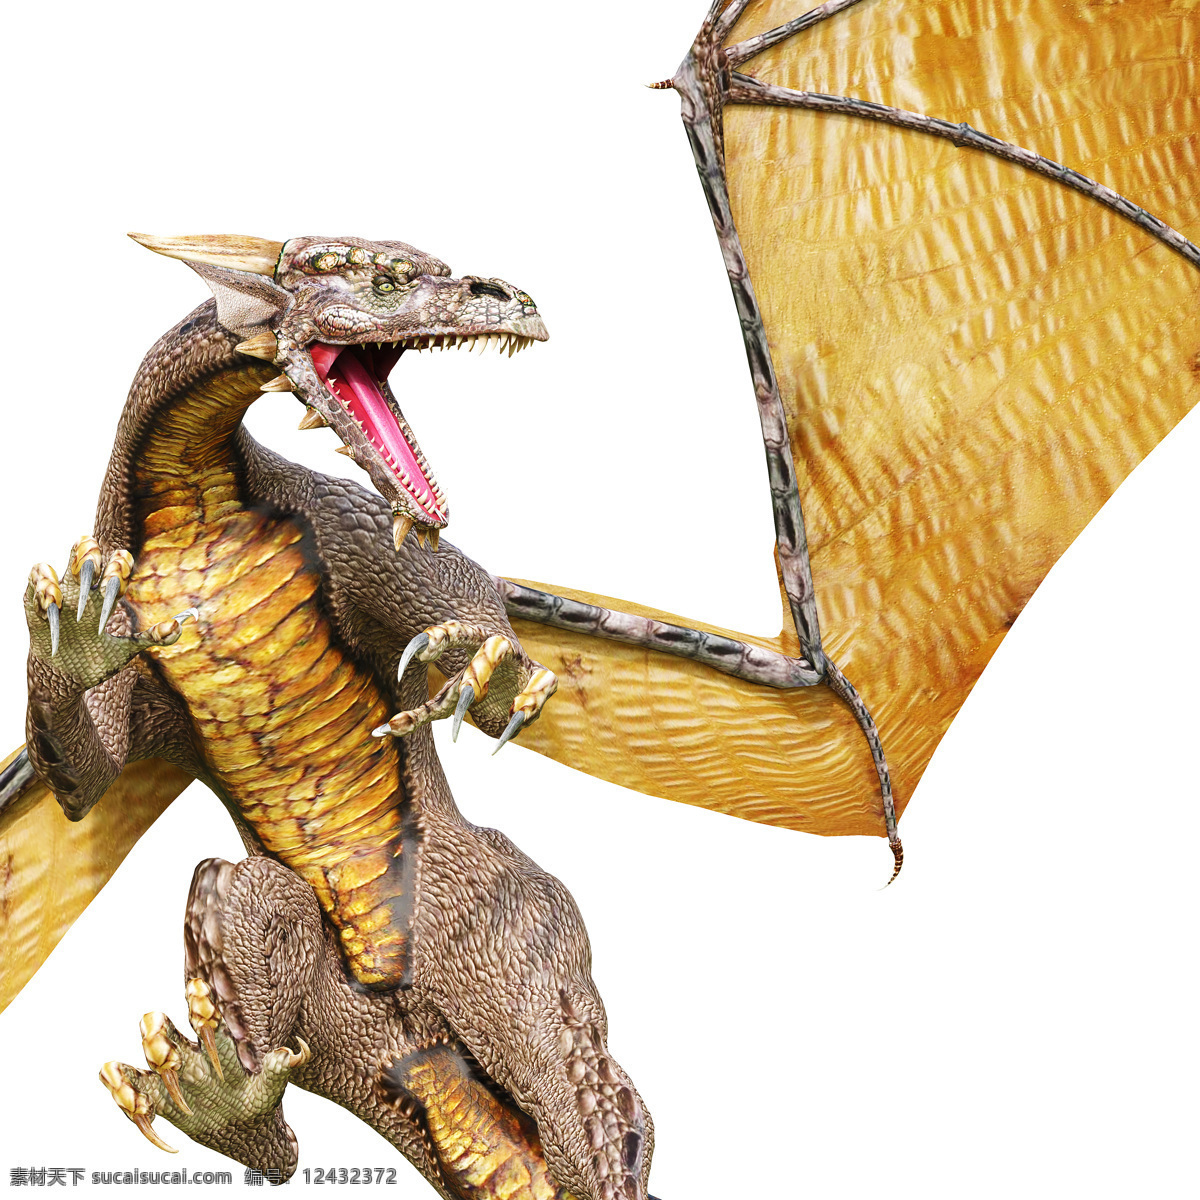 龙图片素材 龙模型 远古生物 尖牙利爪 血盆大口 凶残 最大的掠食者 3d模型 3d作品 空中飞鸟 生物世界